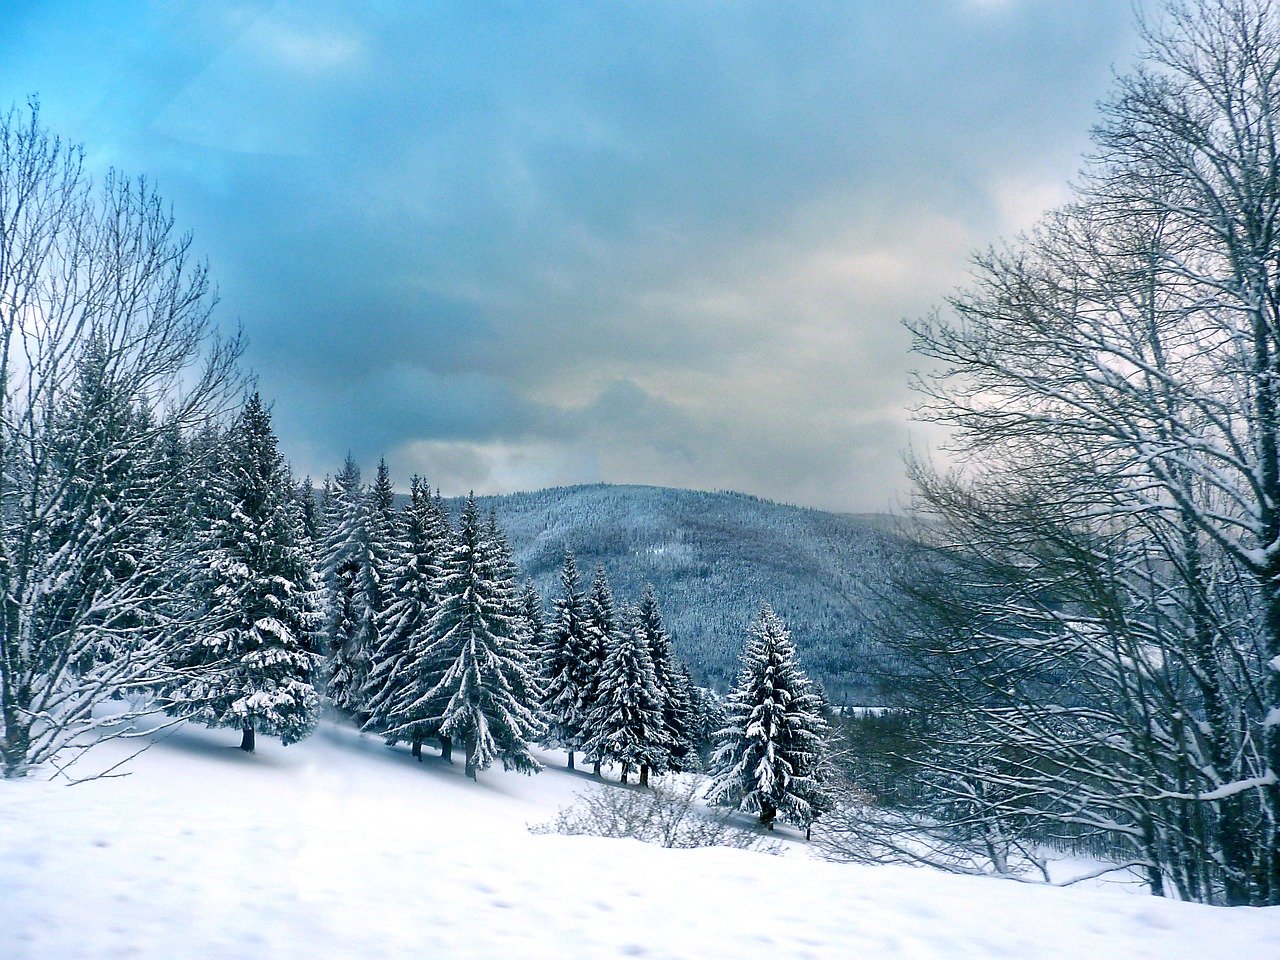 Vosges sous la neige, image par Yves Bernardi de Pixabay